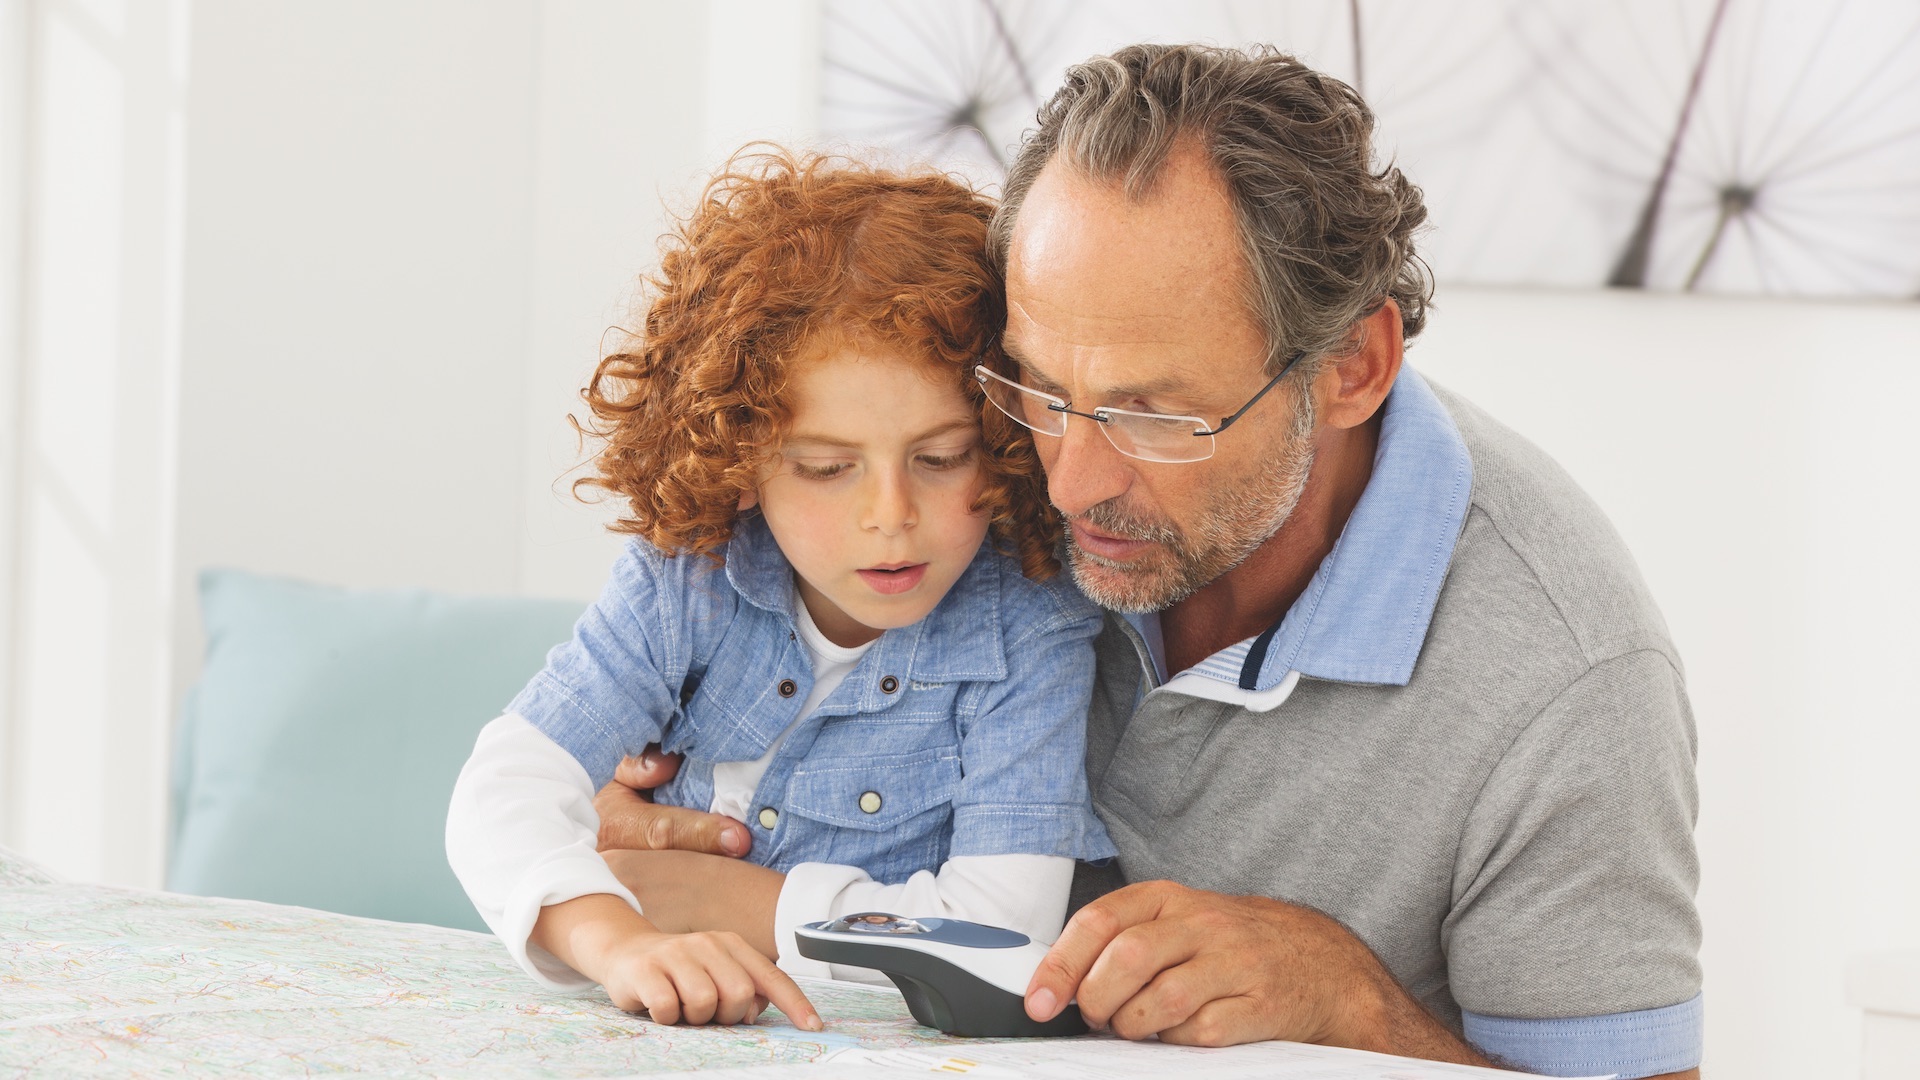 Das Bild zeigt einen älteren Herrn, der gemeinsam mit einem Kind mit der Leuchtlupe eine Landkarte liest.